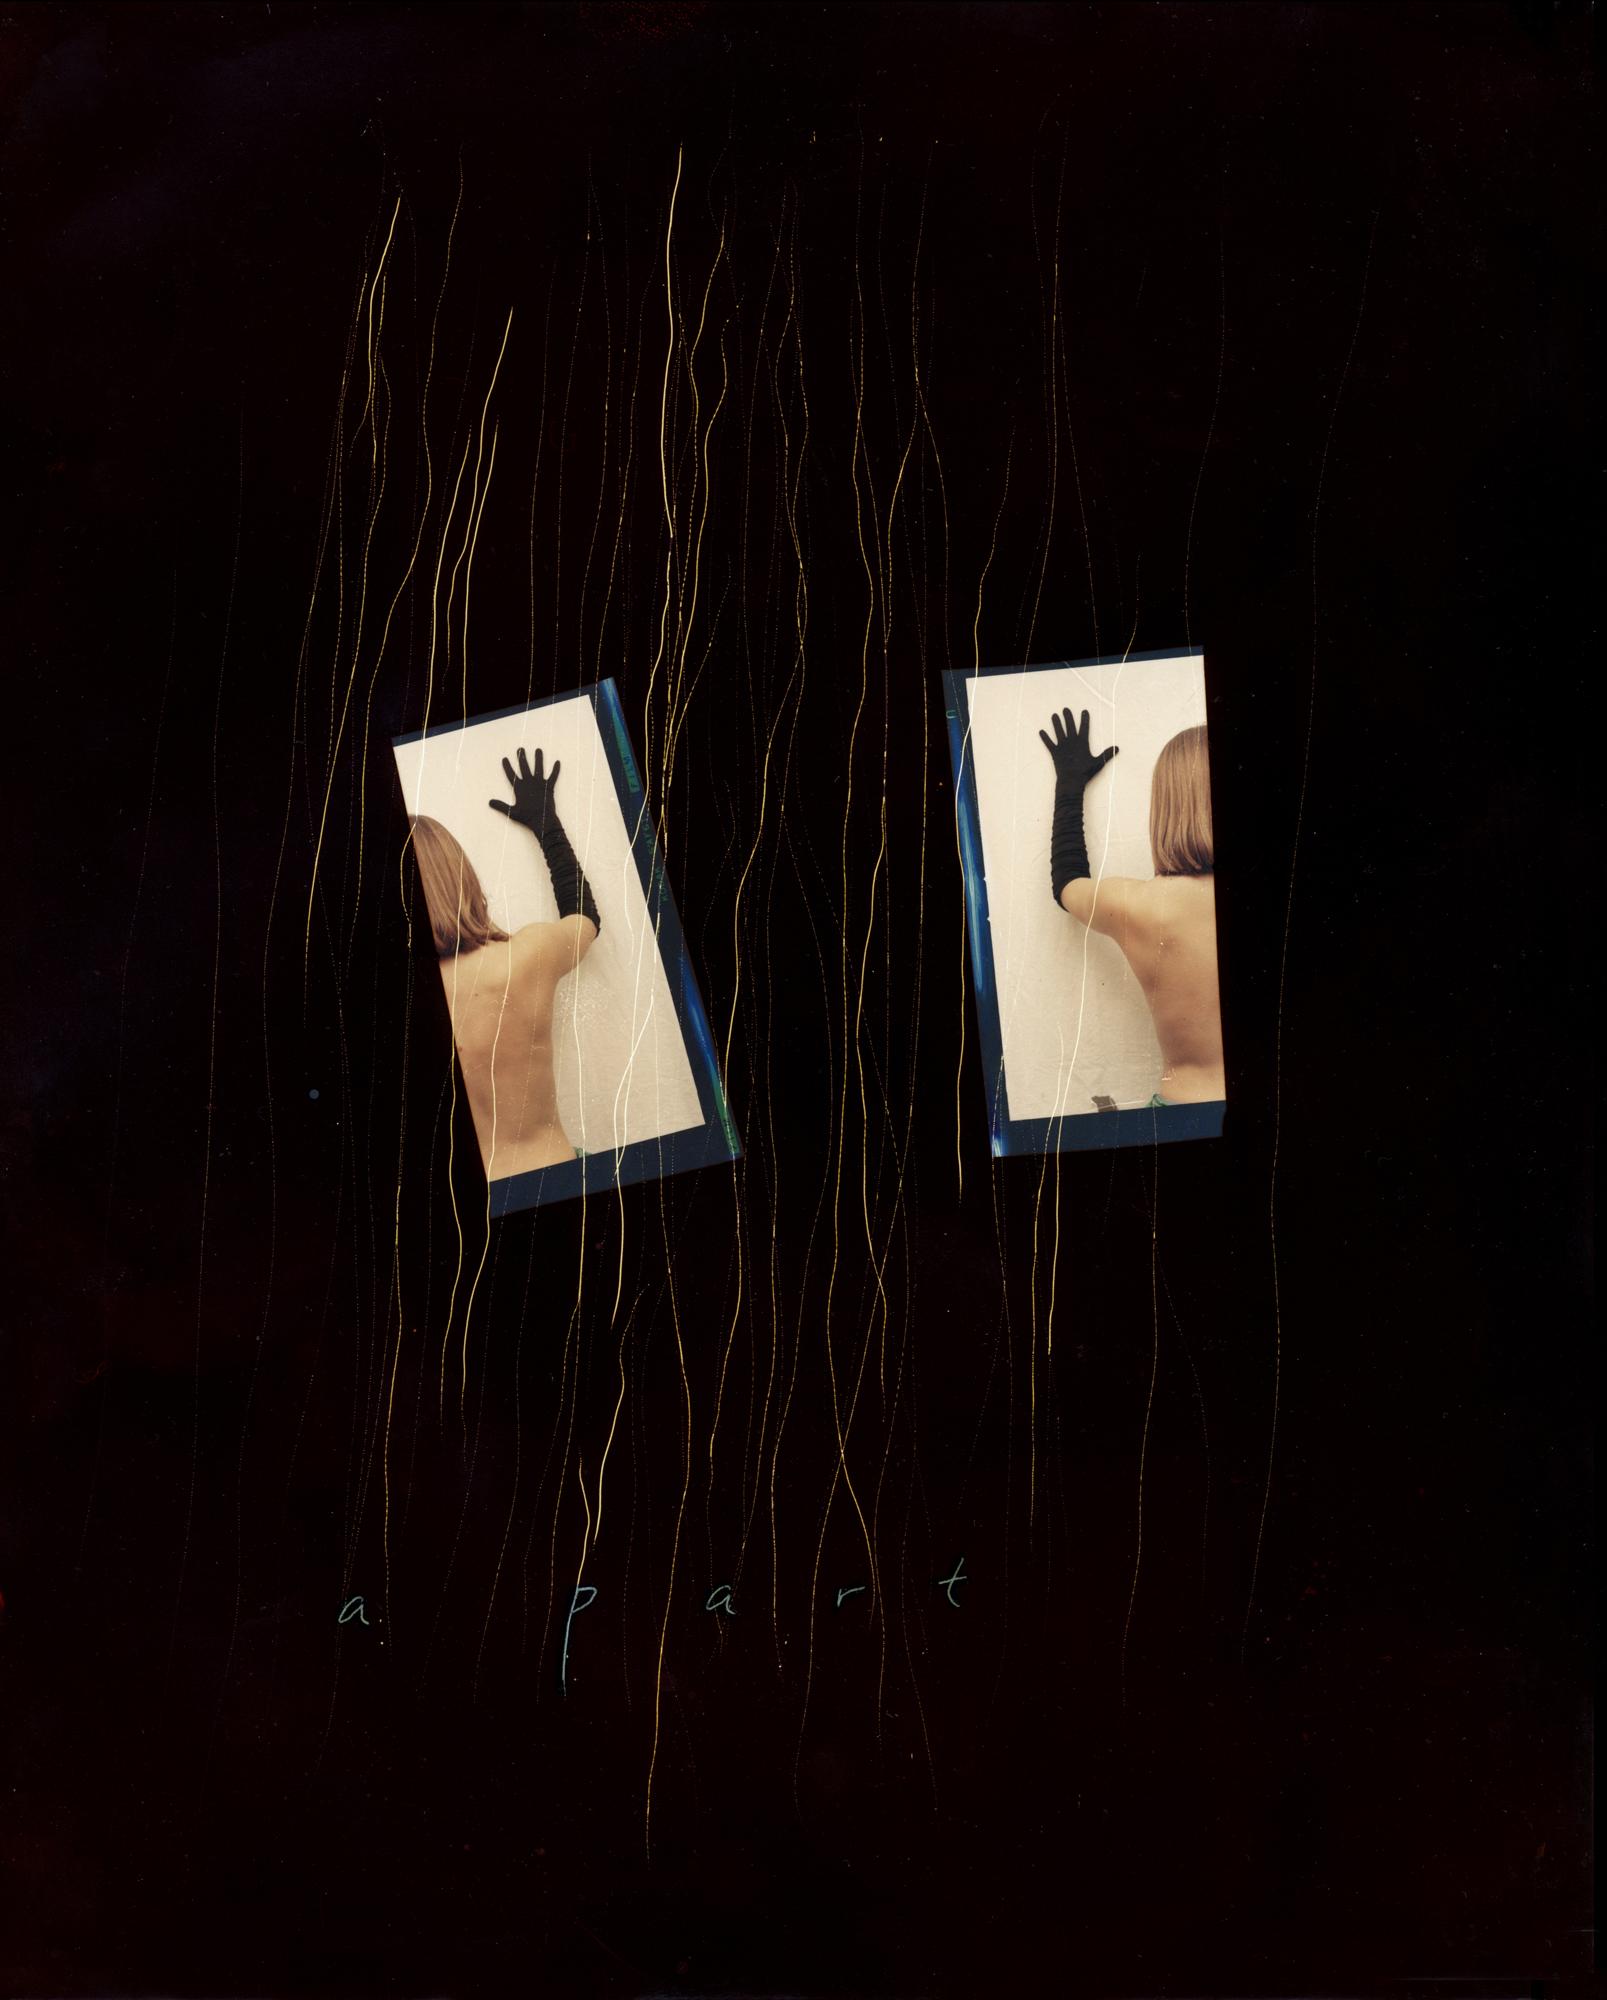 Jenny Lynn Nude Photograph – Ein Teil: Abstrakte Fotografie mit Akten und Text auf Schwarz aus handgeätztem Fotogramm